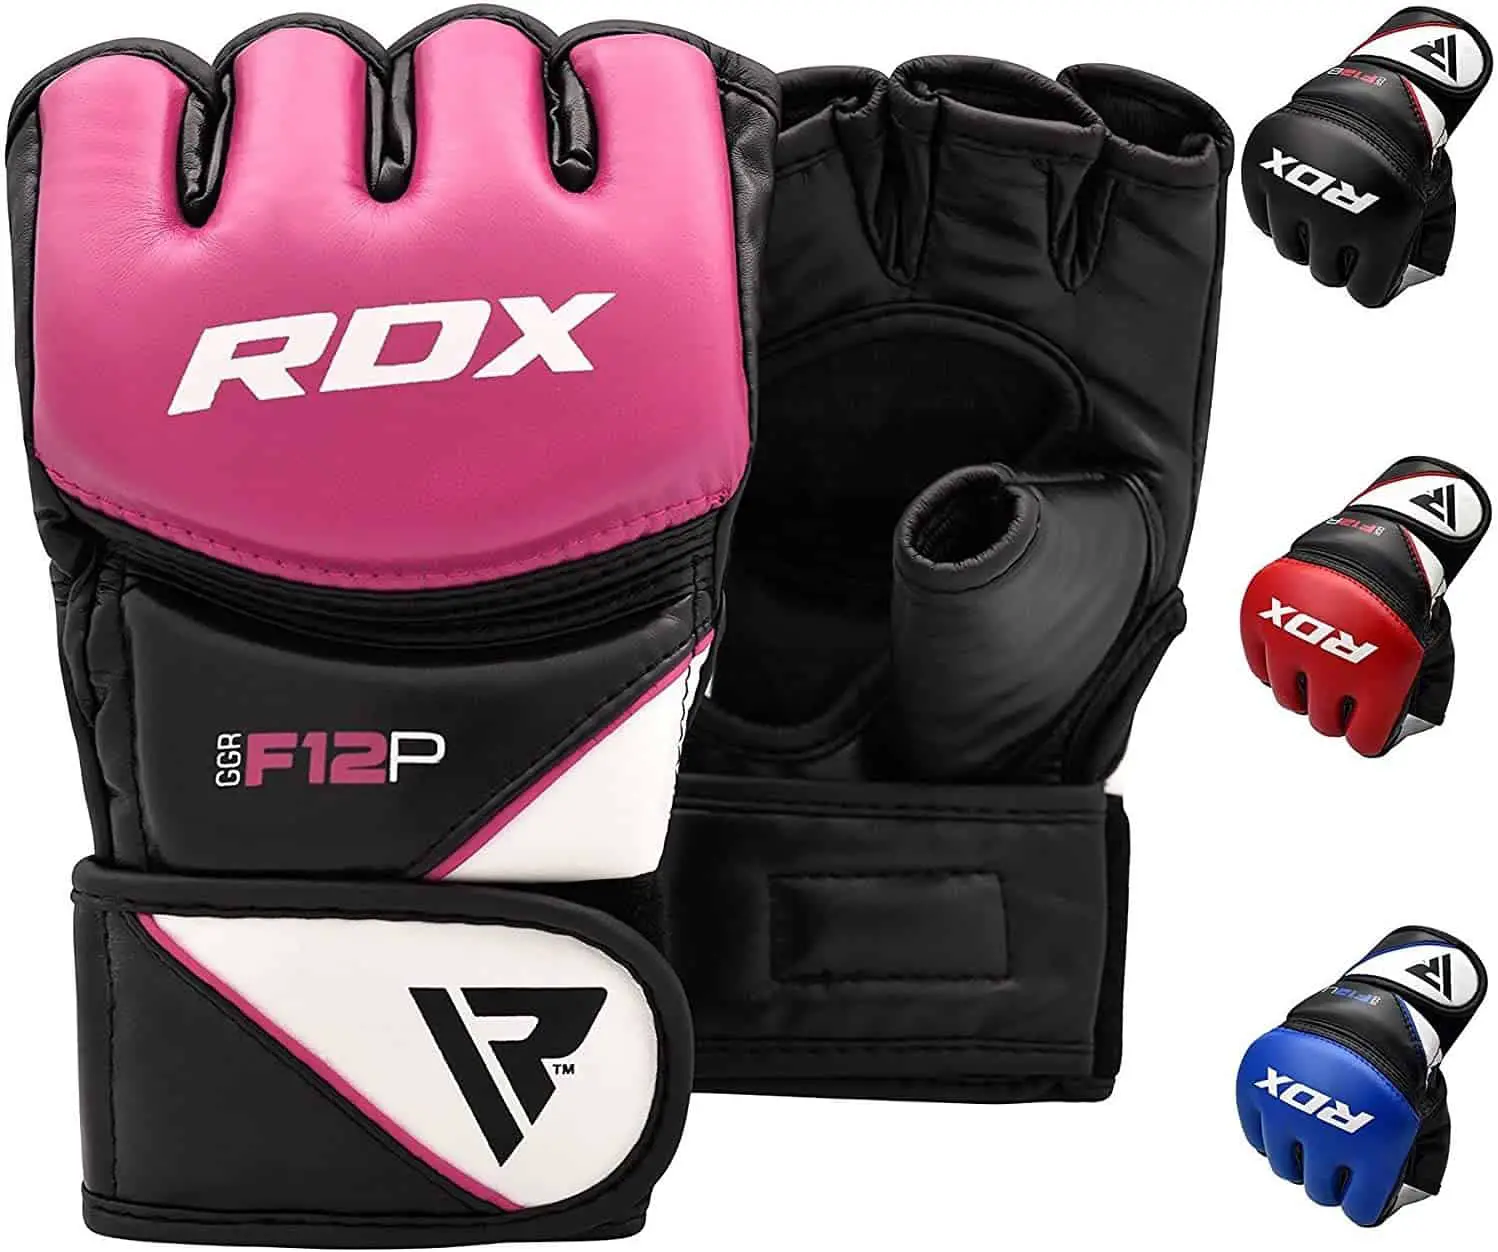 ถุงมือเจาะ MMA ที่ดีที่สุด: RDX Maya F12